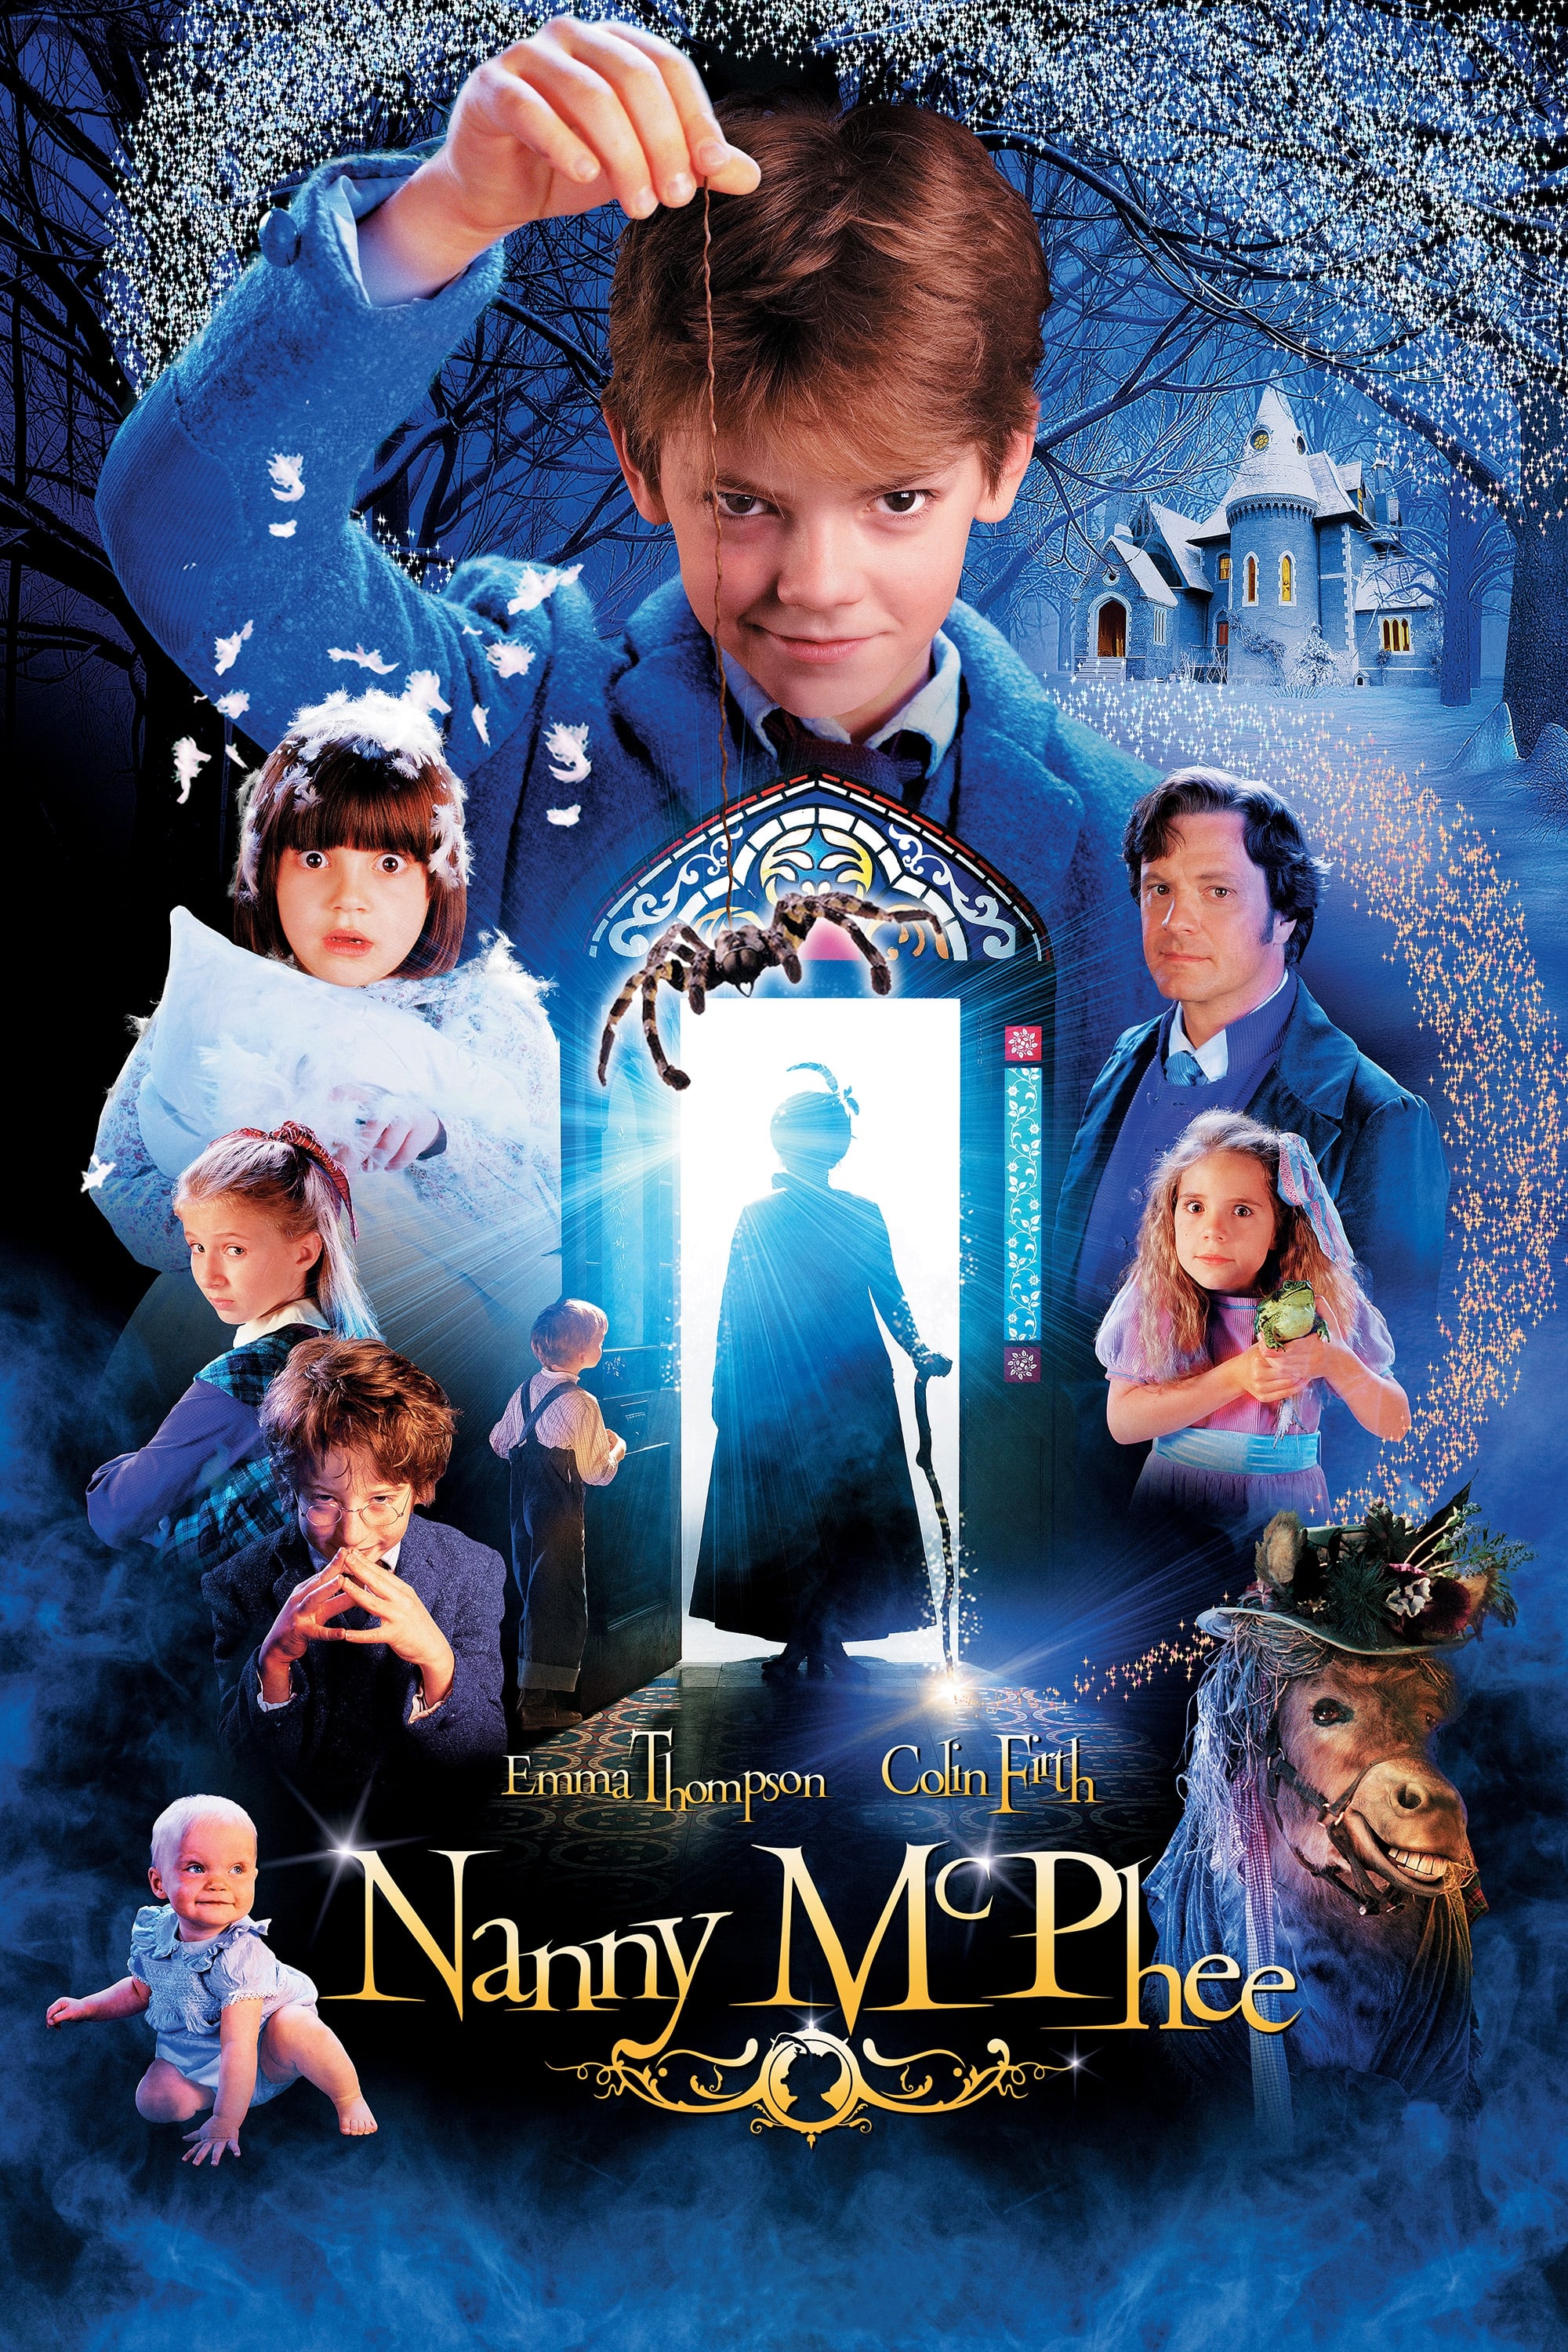 La niñera mágica (2005)